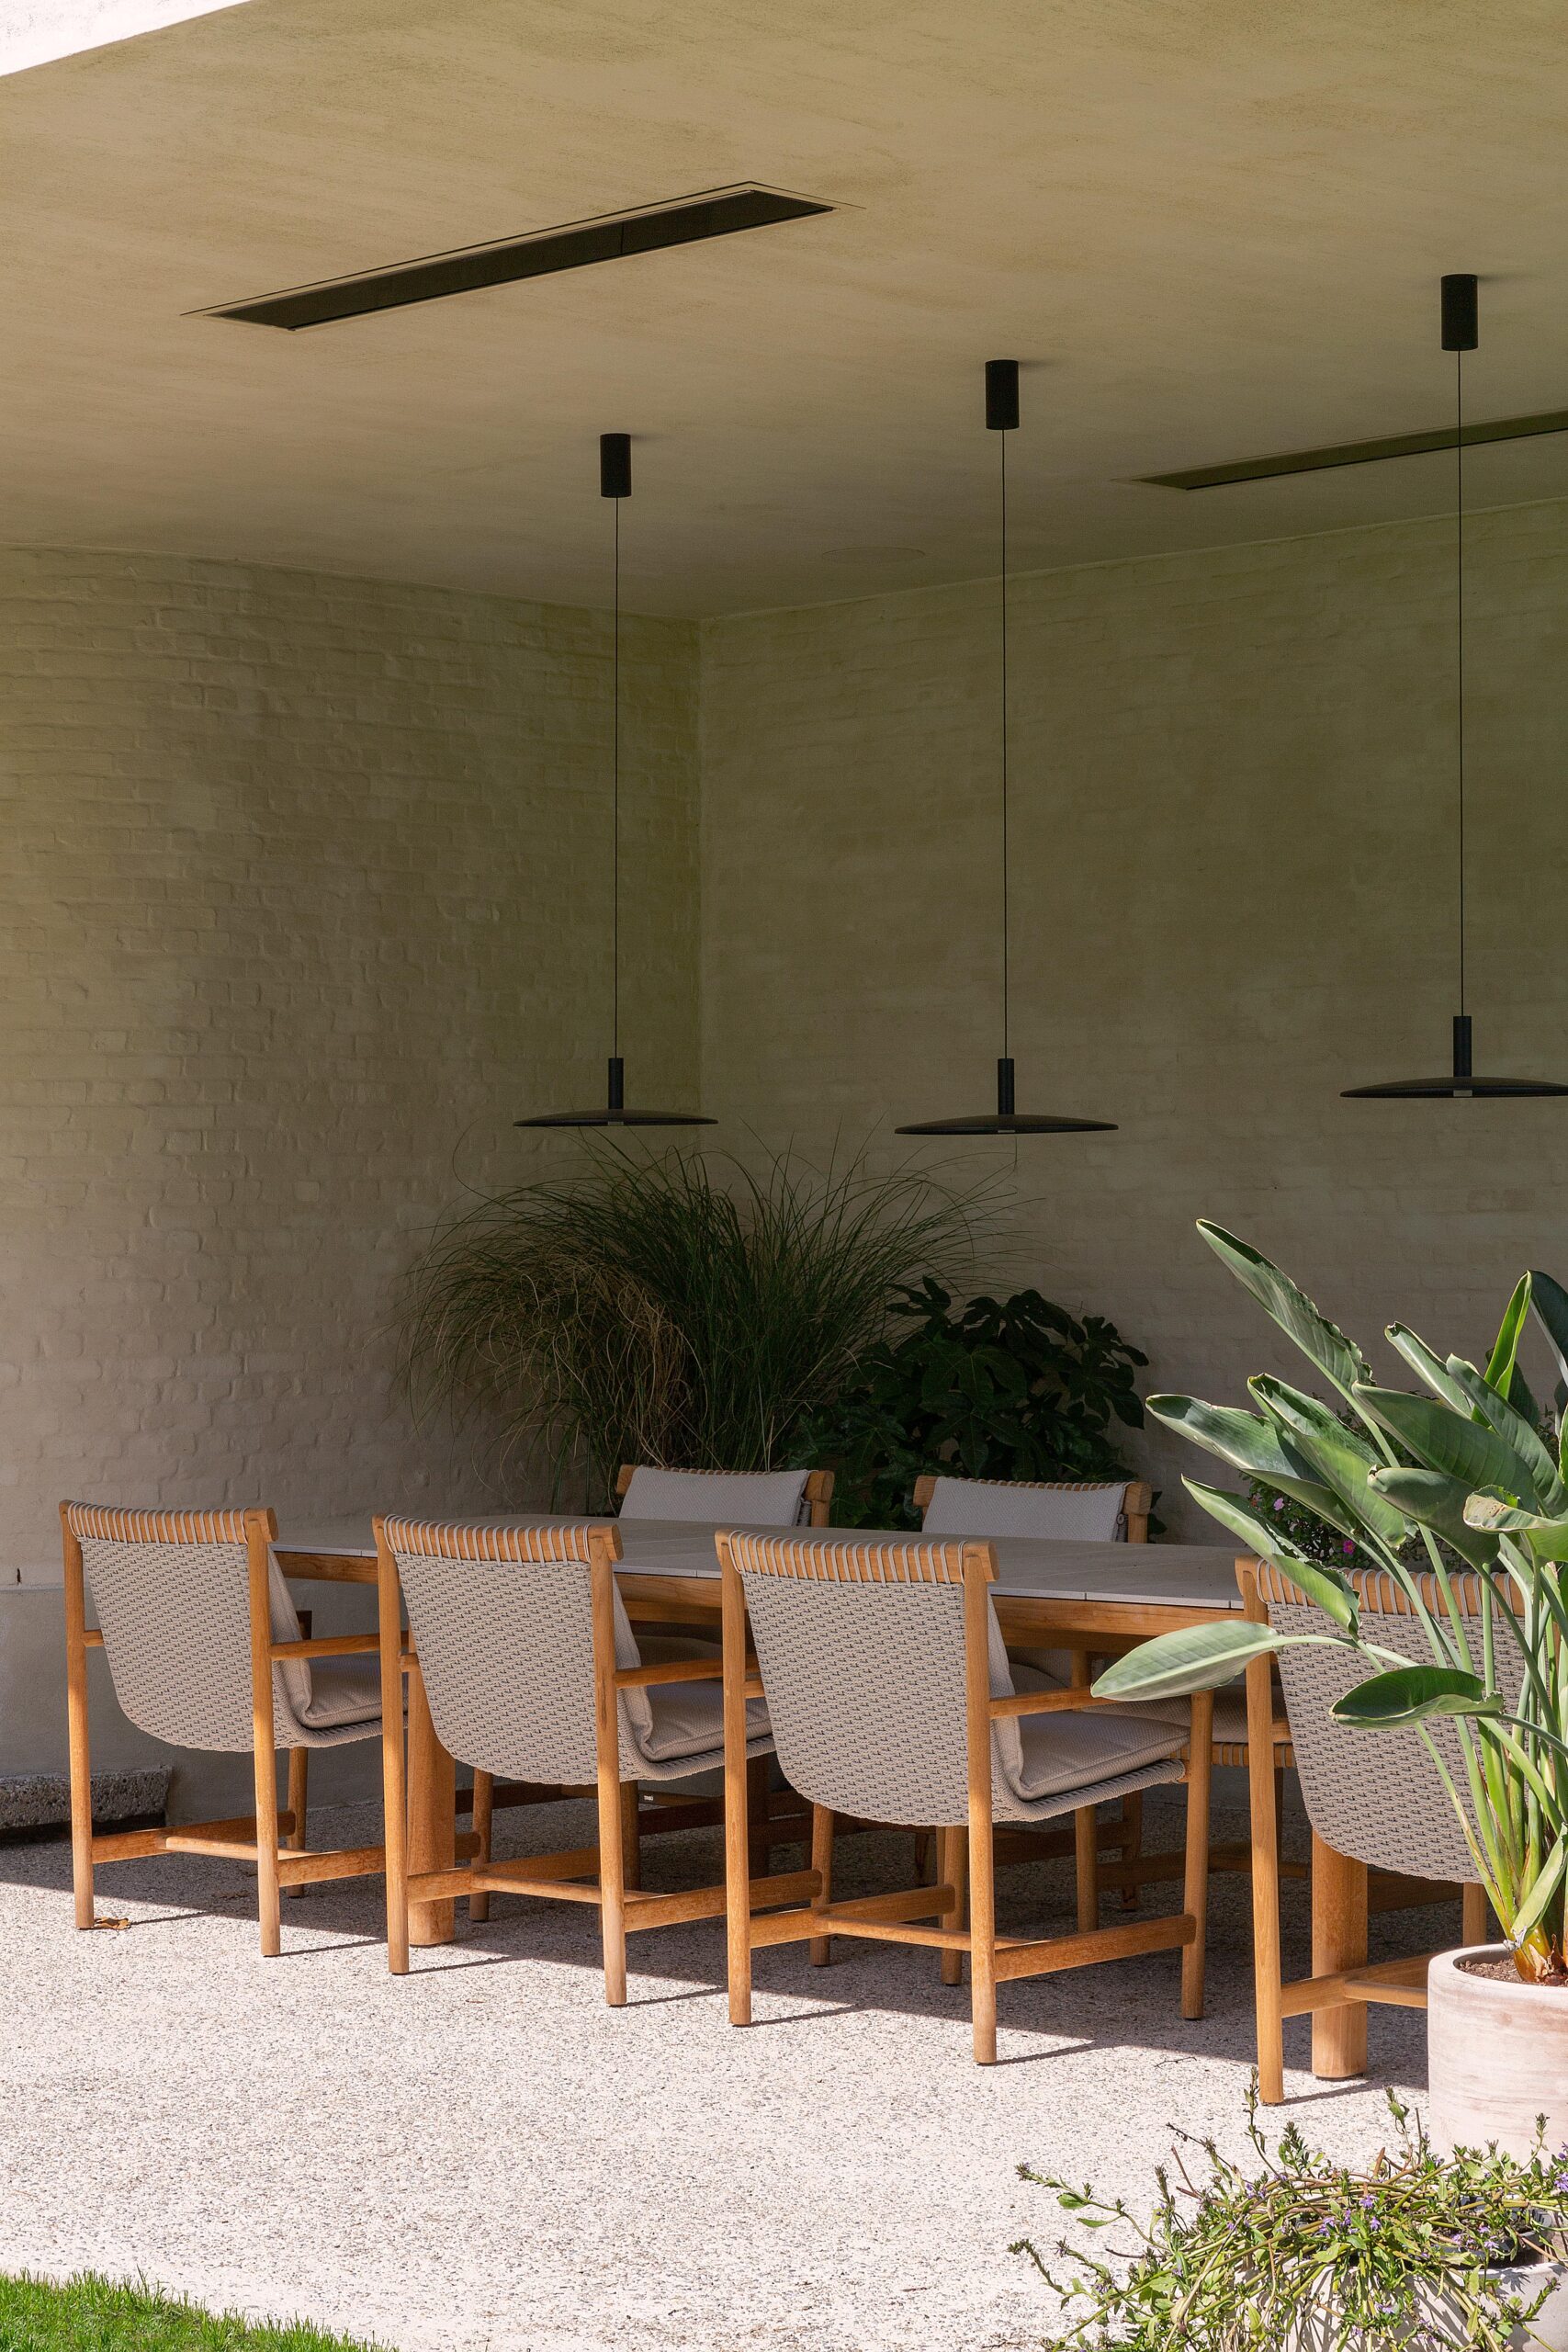 Een buiten eetgedeelte met houten stoelen, moderne hanglampen, een witte bakstenen muur en potten met planten.